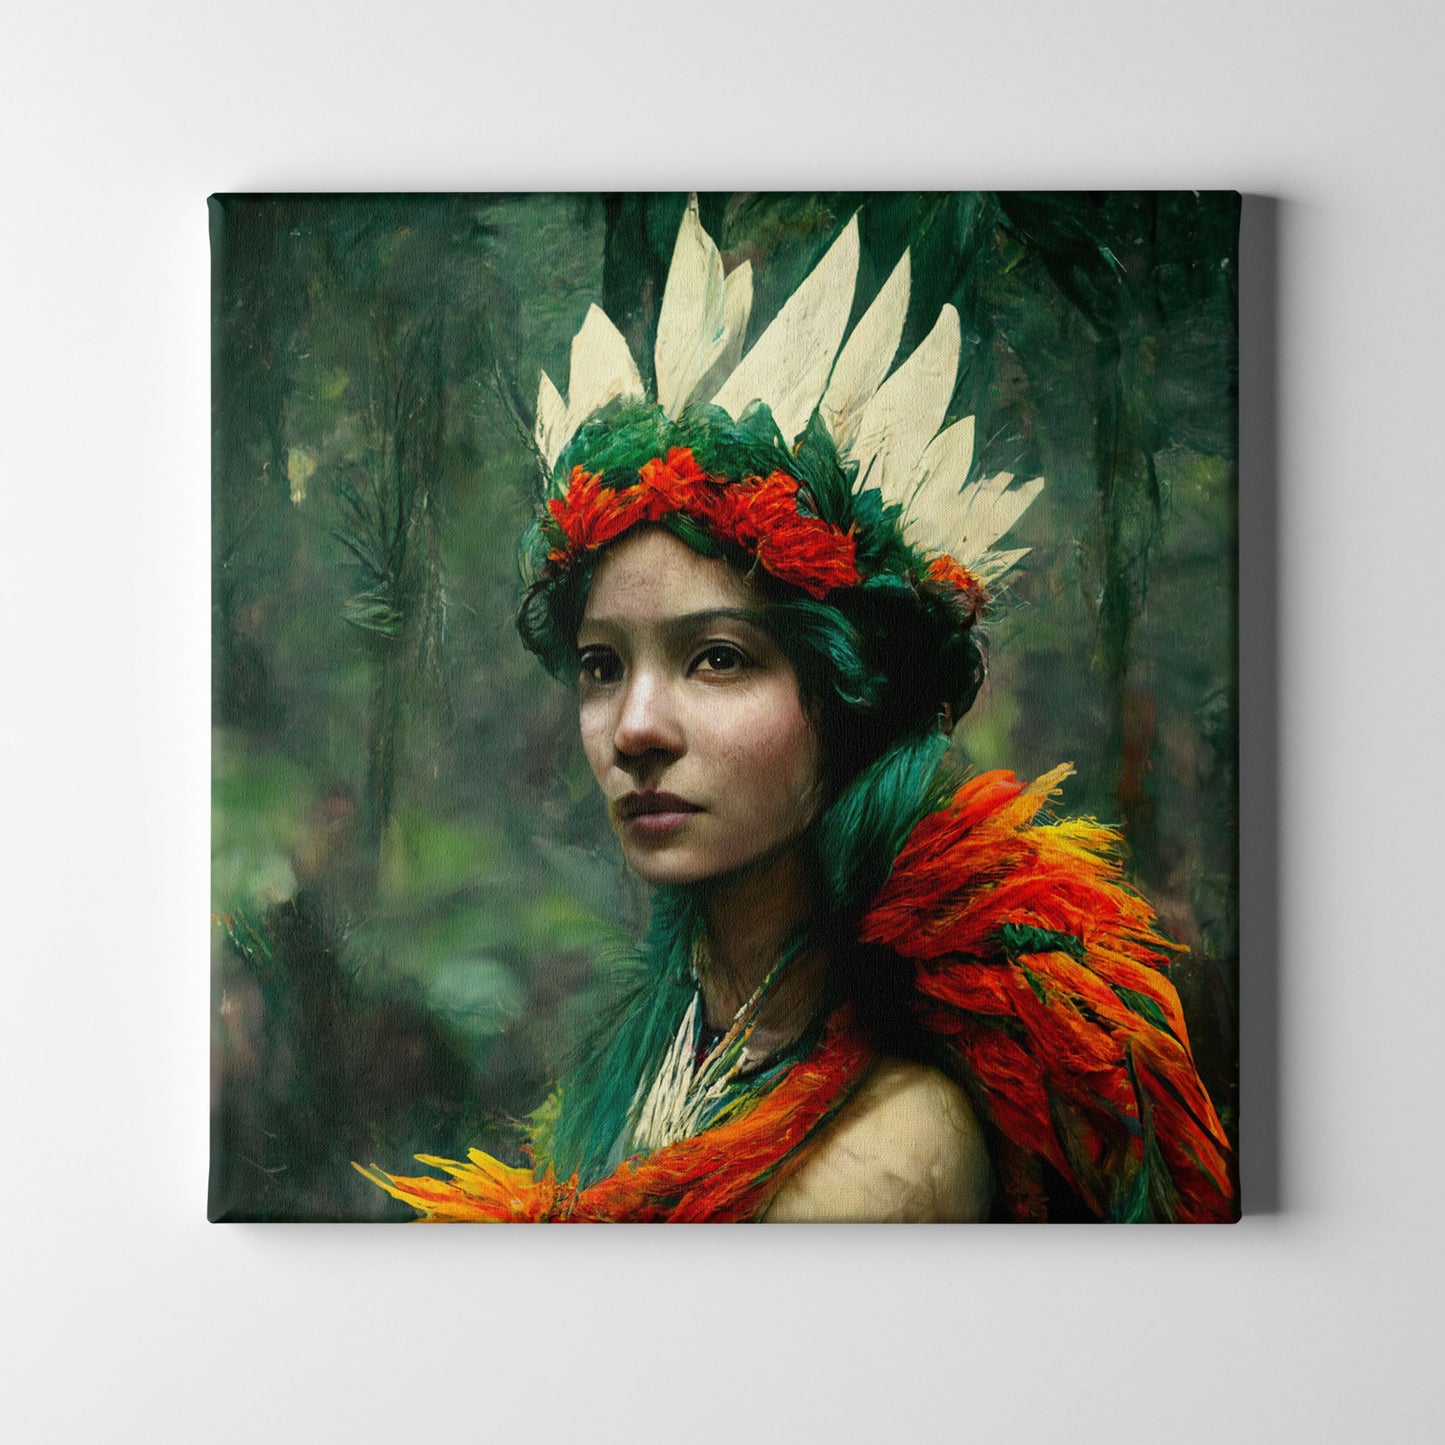 Women in quetzal feathers